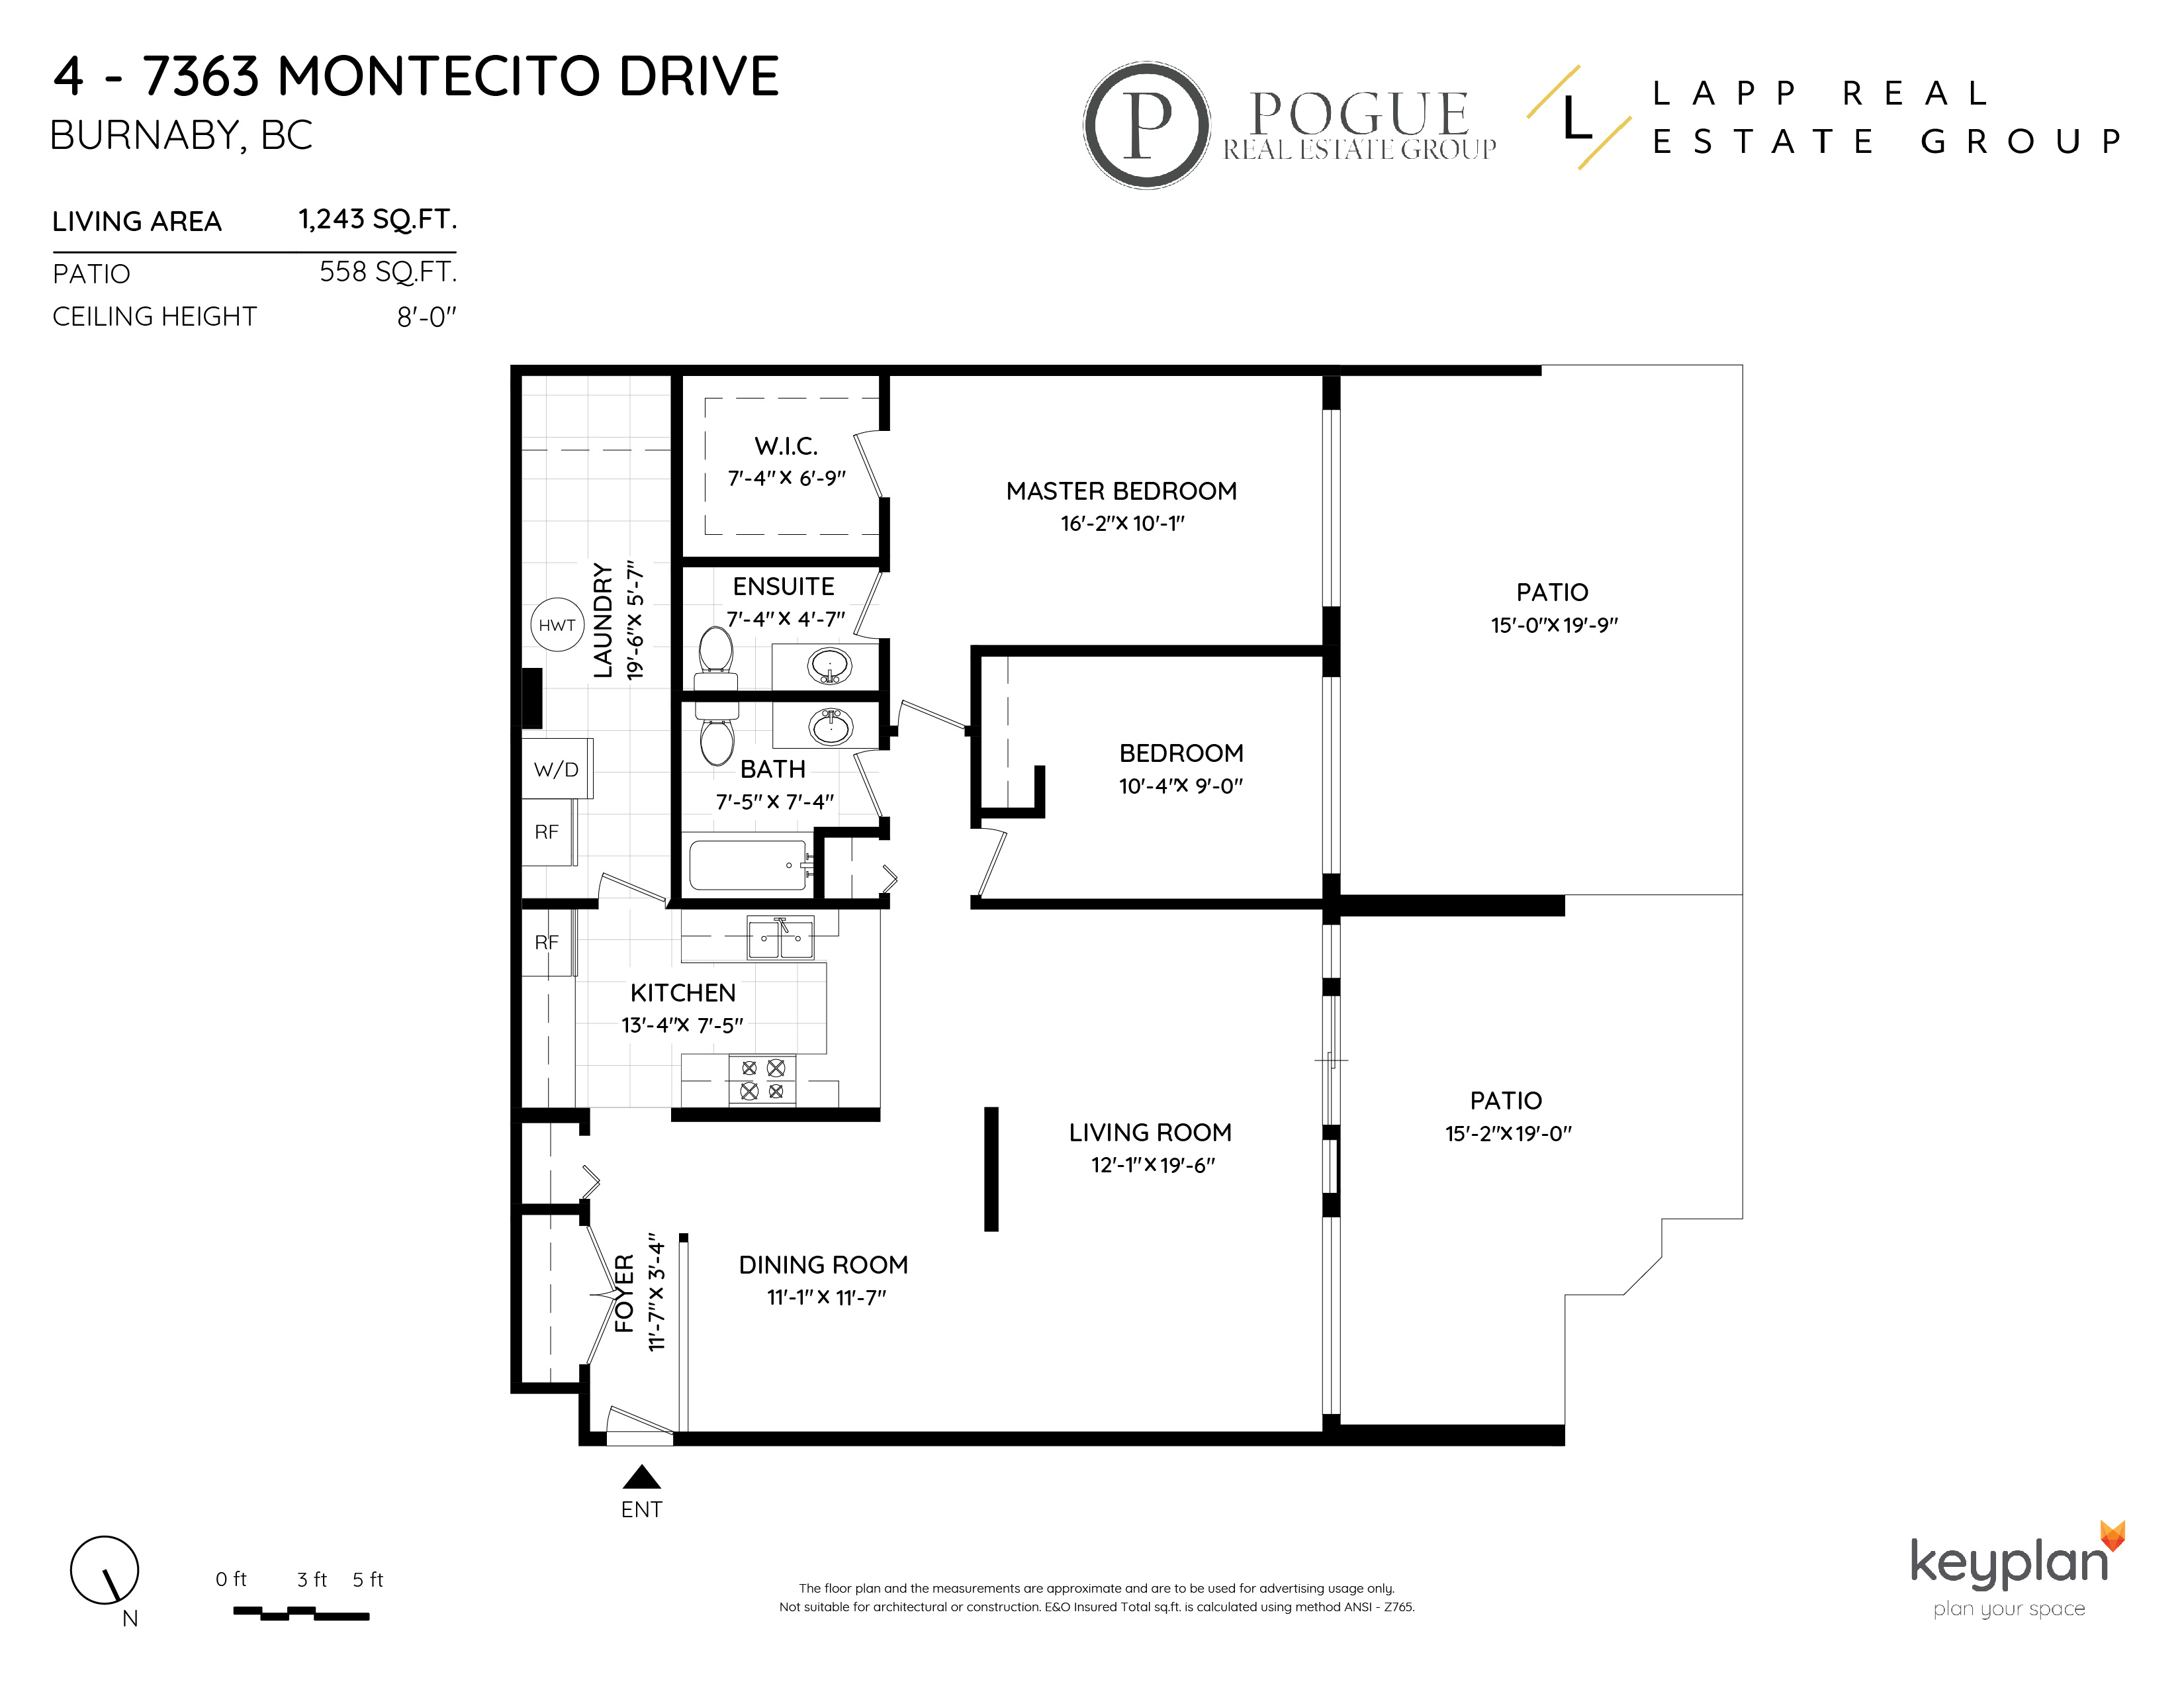 4 7363 Montecito Drive Burnaby Floor Plan